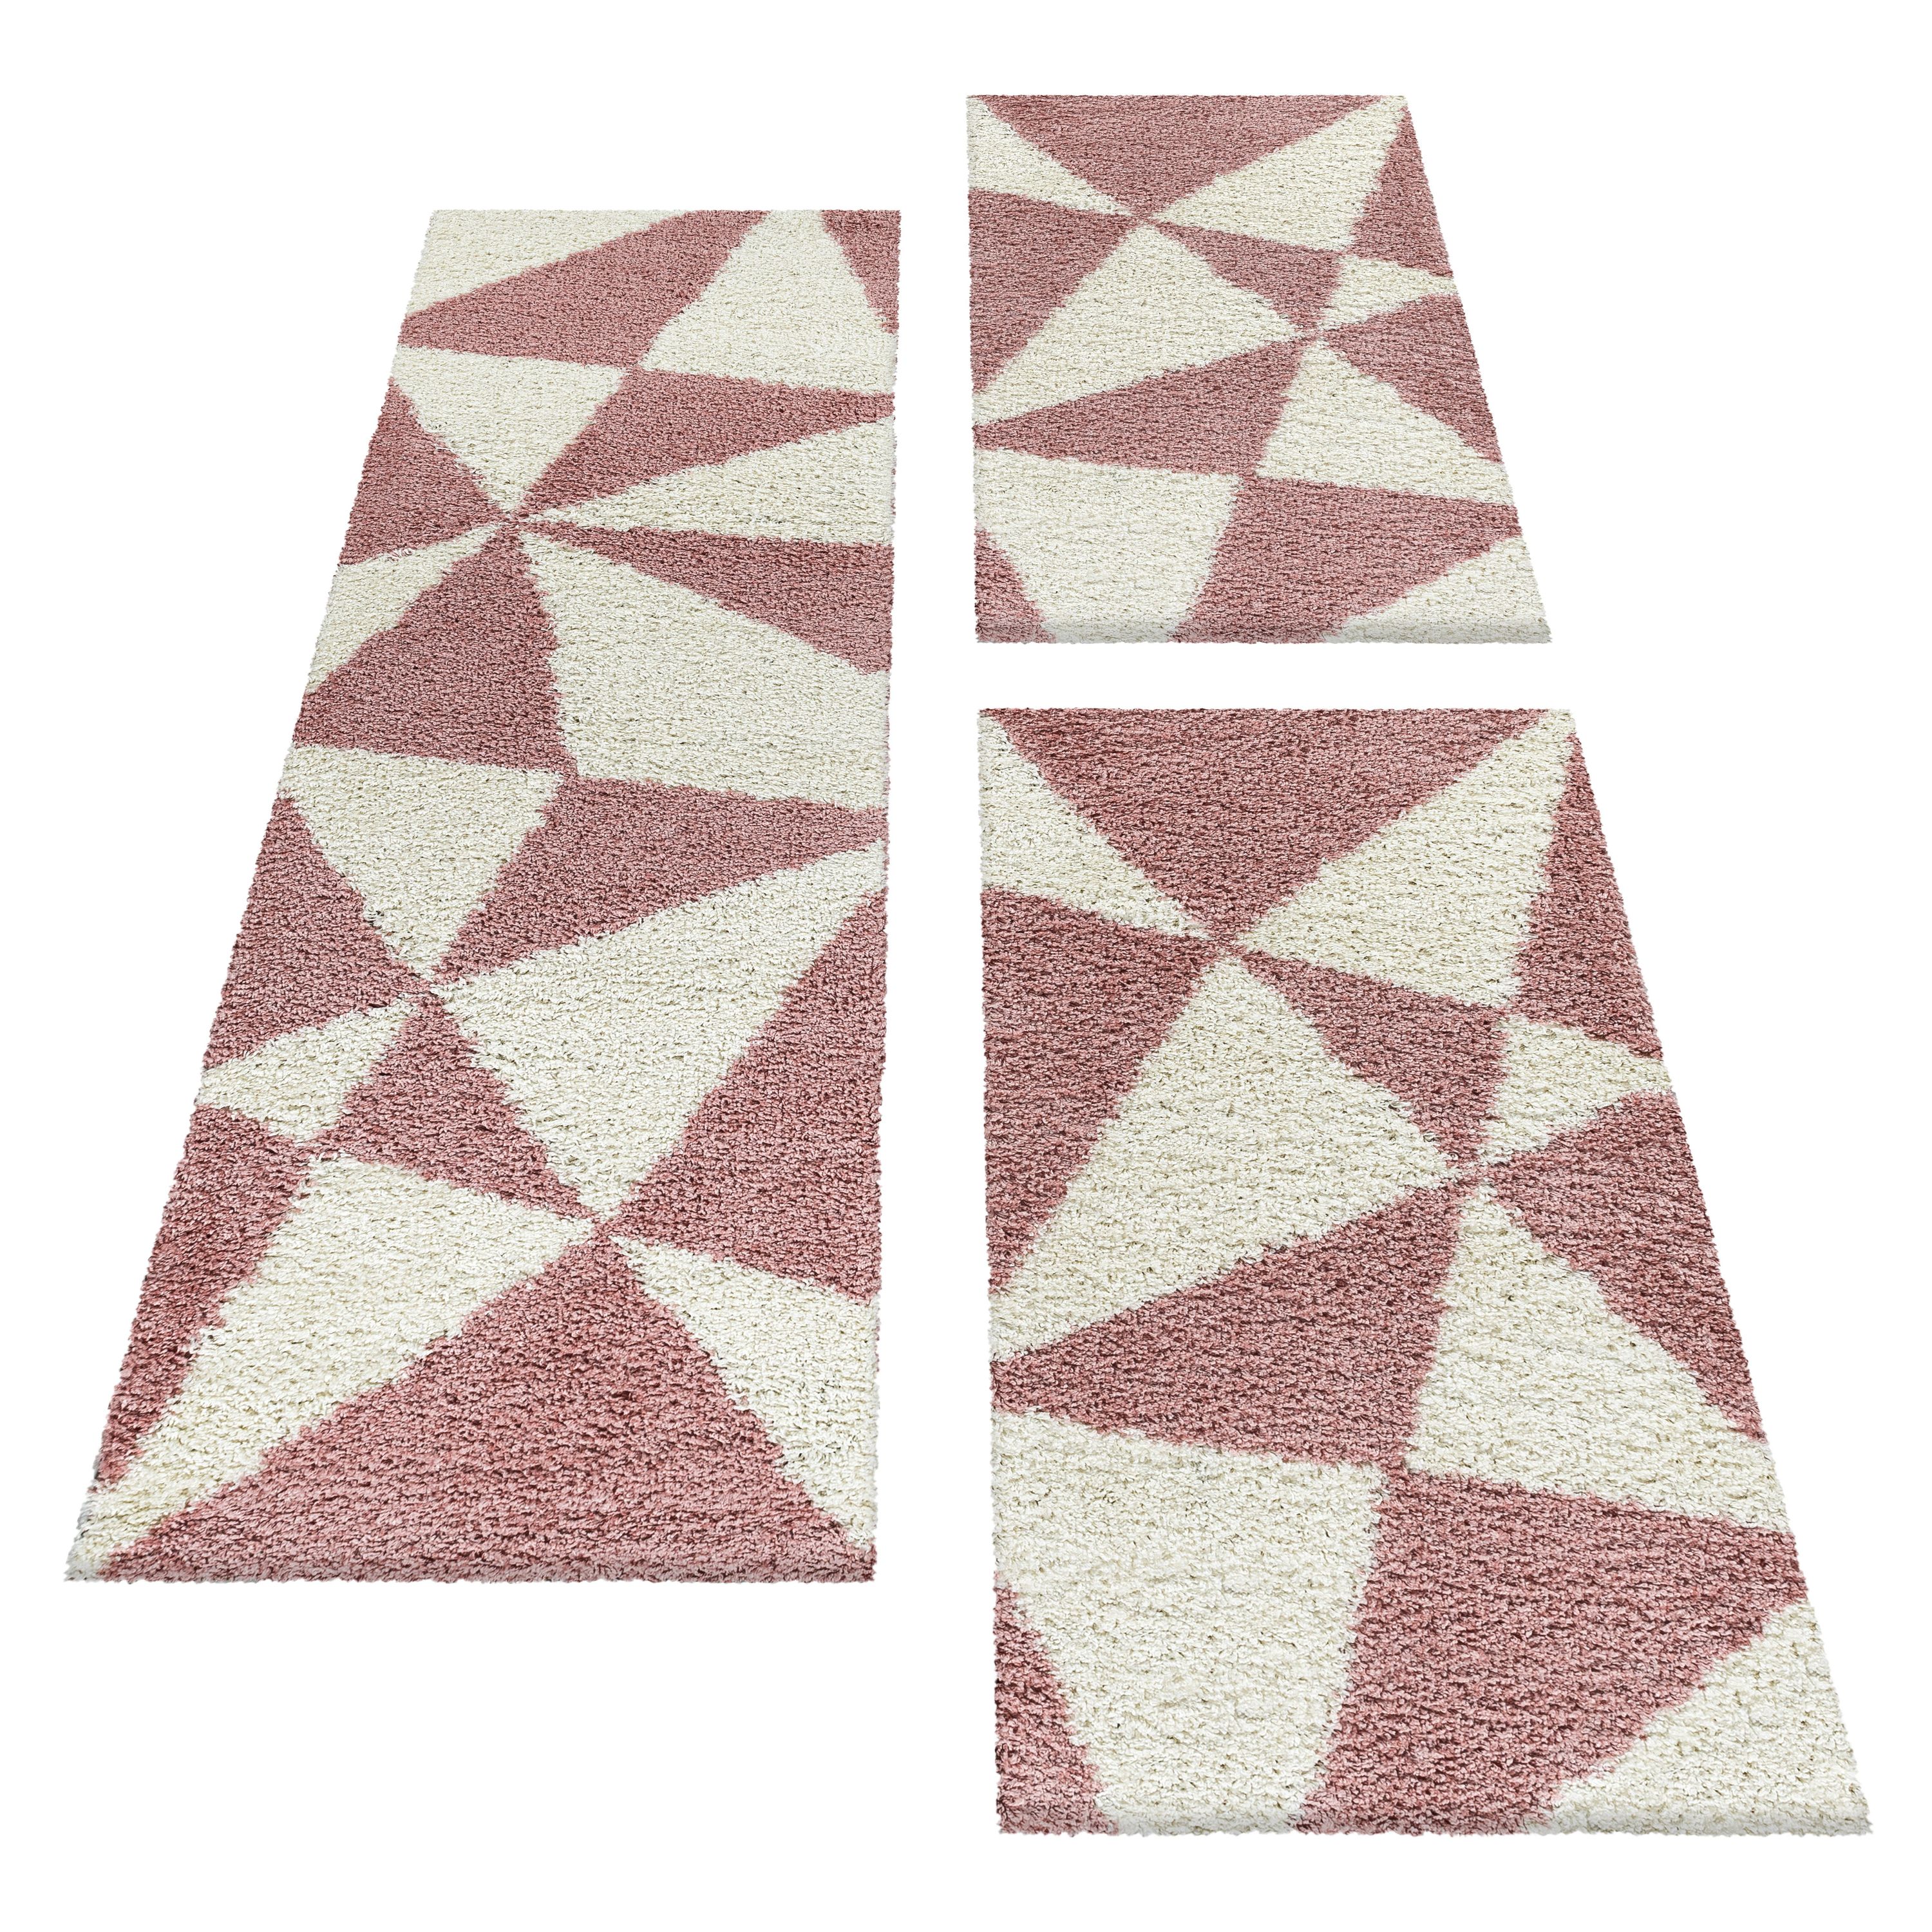 Design Teppich Set Shaggy Bettumrandung Läufer Set Muster Dreiecke 3 Teile Rose